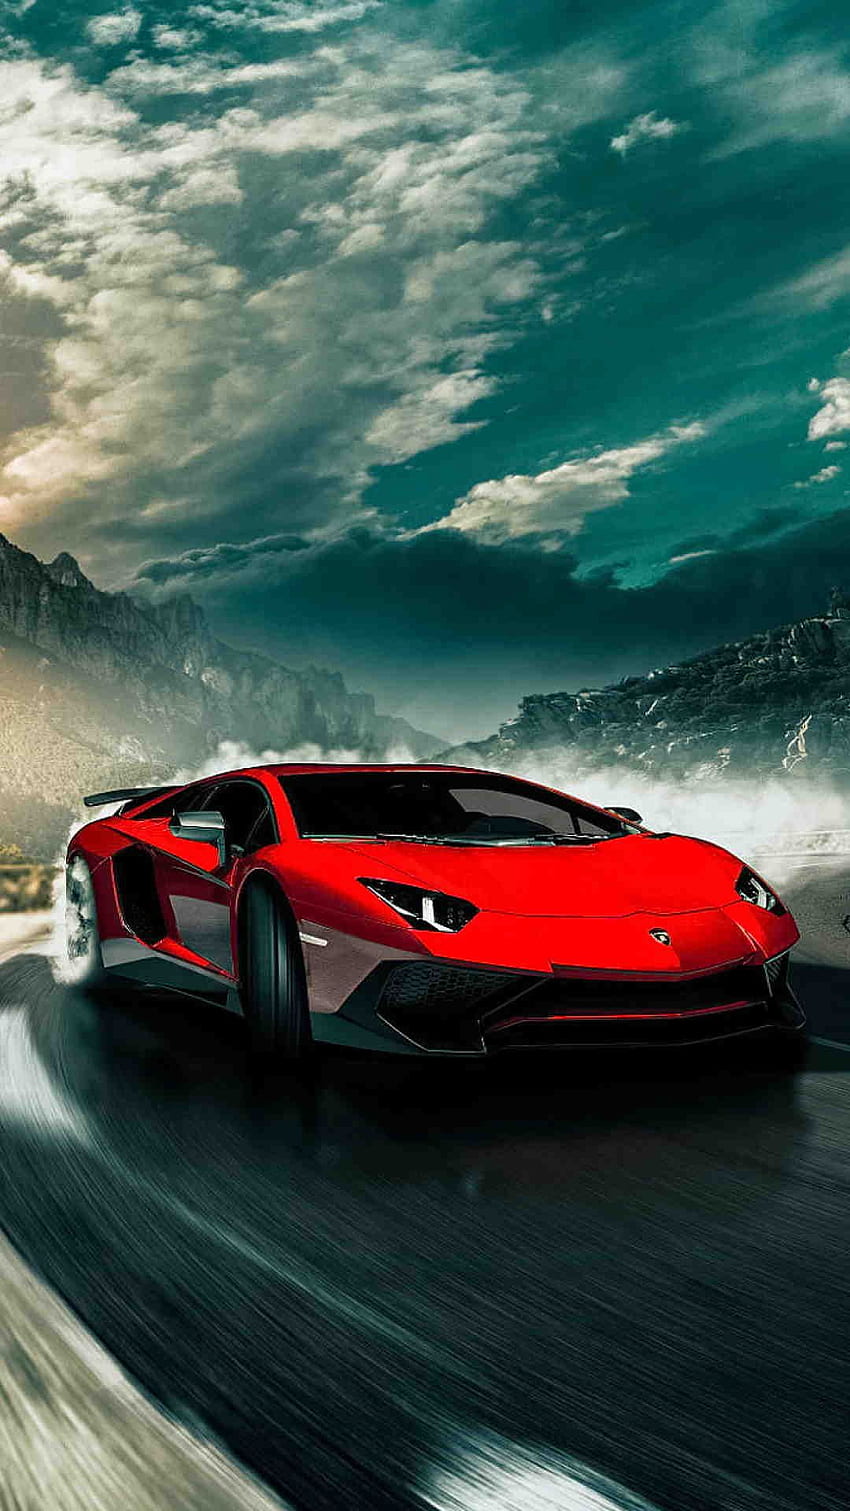 De 2017 Lamborghini Aventador SV LP750 4 Para Android Y IPhone 6 Plus. Coches Lamborghini, Lamborghini rojo, coches de superlujo fondo de pantalla del teléfono